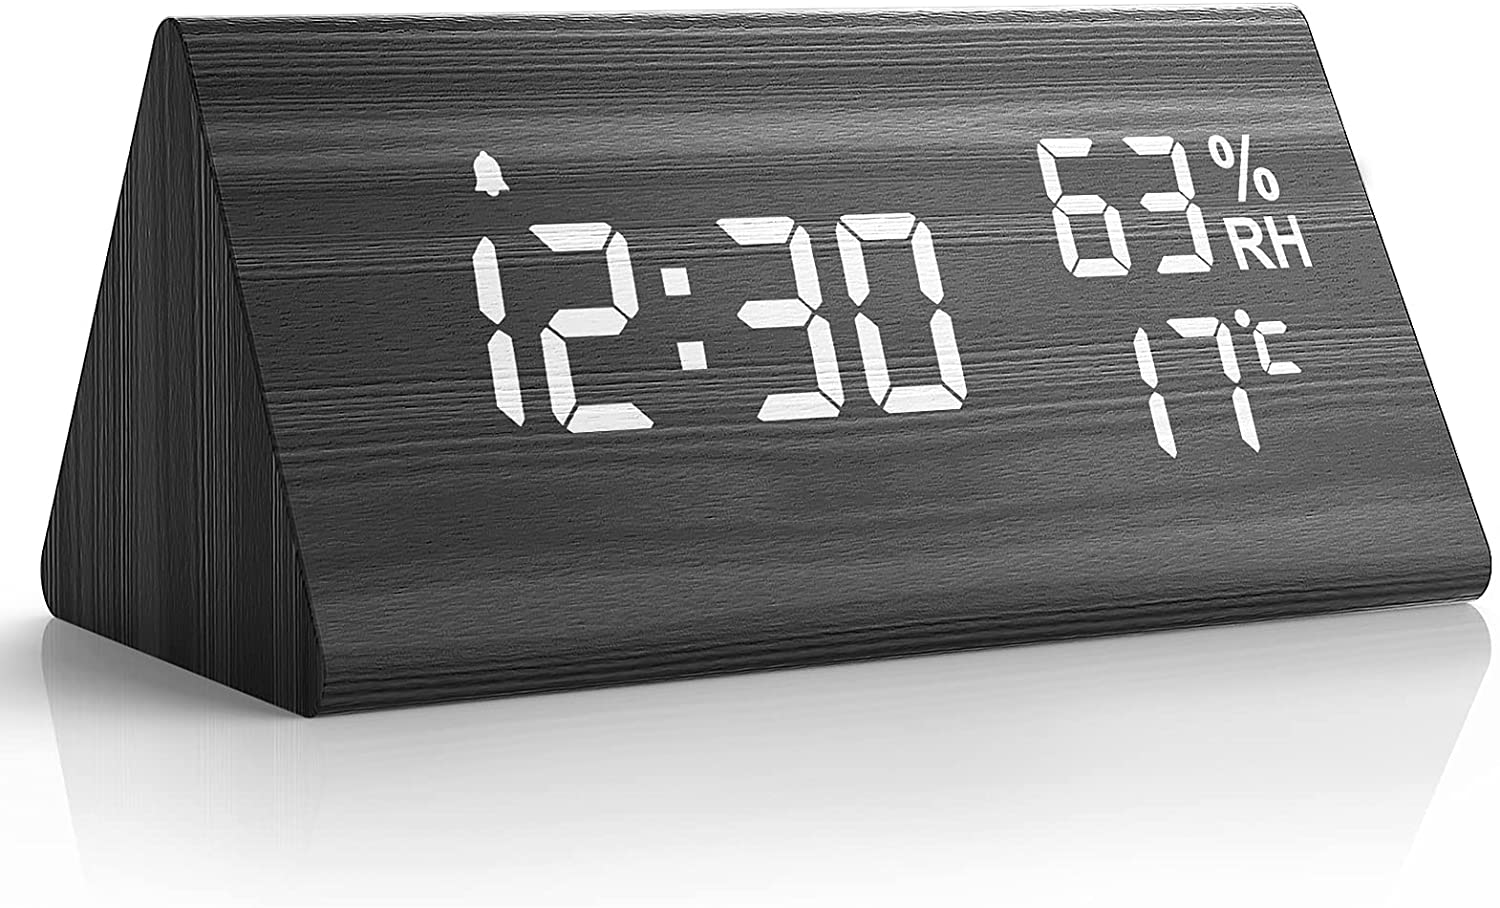 Digitaluhr Wecker Alarm Clock Digitalwecker mit Großer LCD Display Kinderwecker 